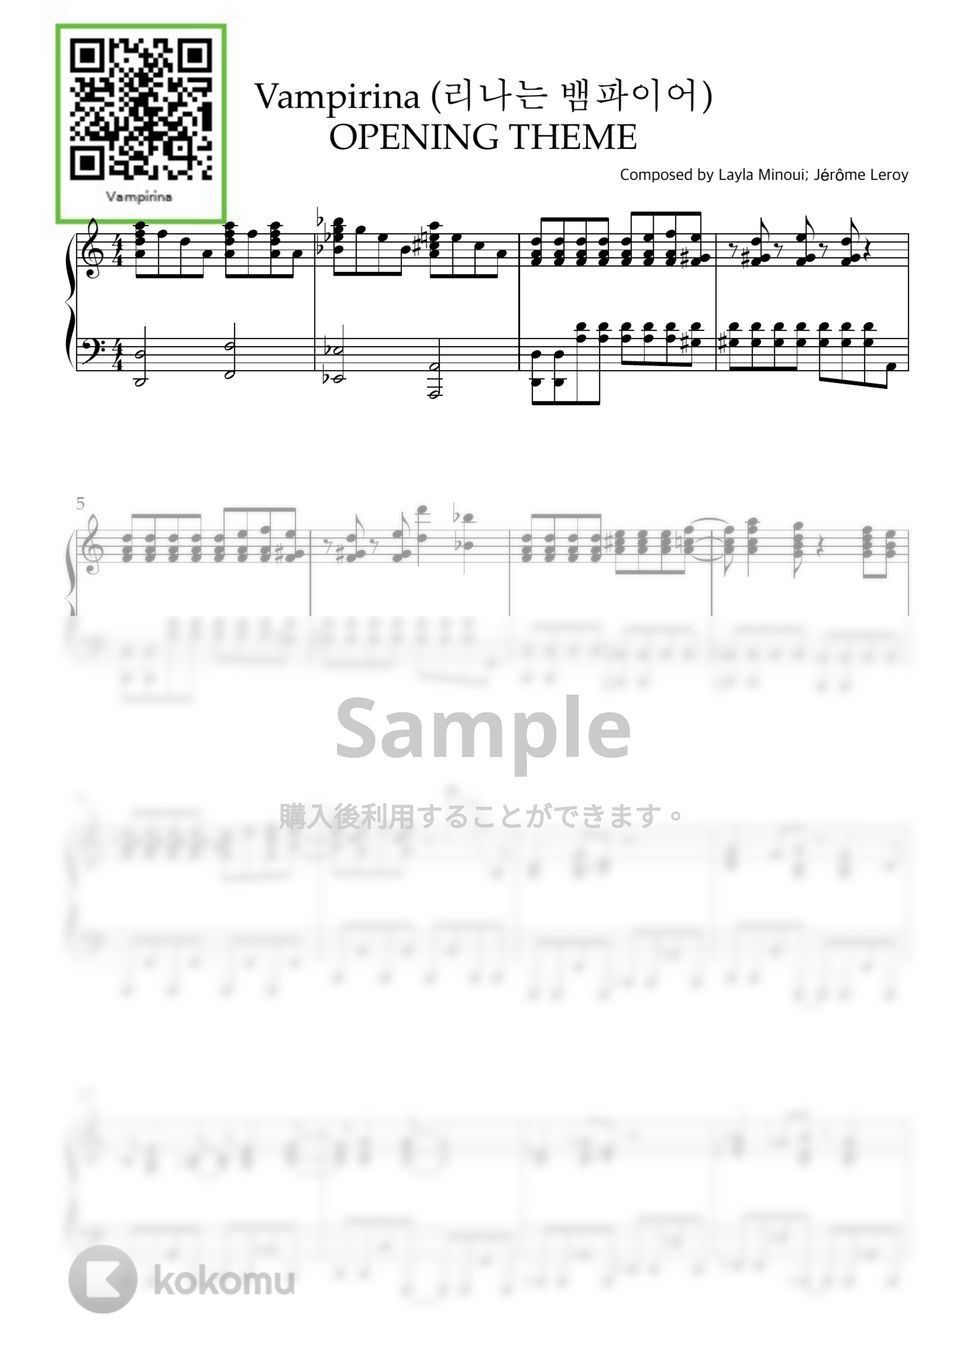 バンピリーナとバンパイアかぞく - Vampirina Theme (PIANO SOLO) by CLOUD LADDER 구름사다리뮤직